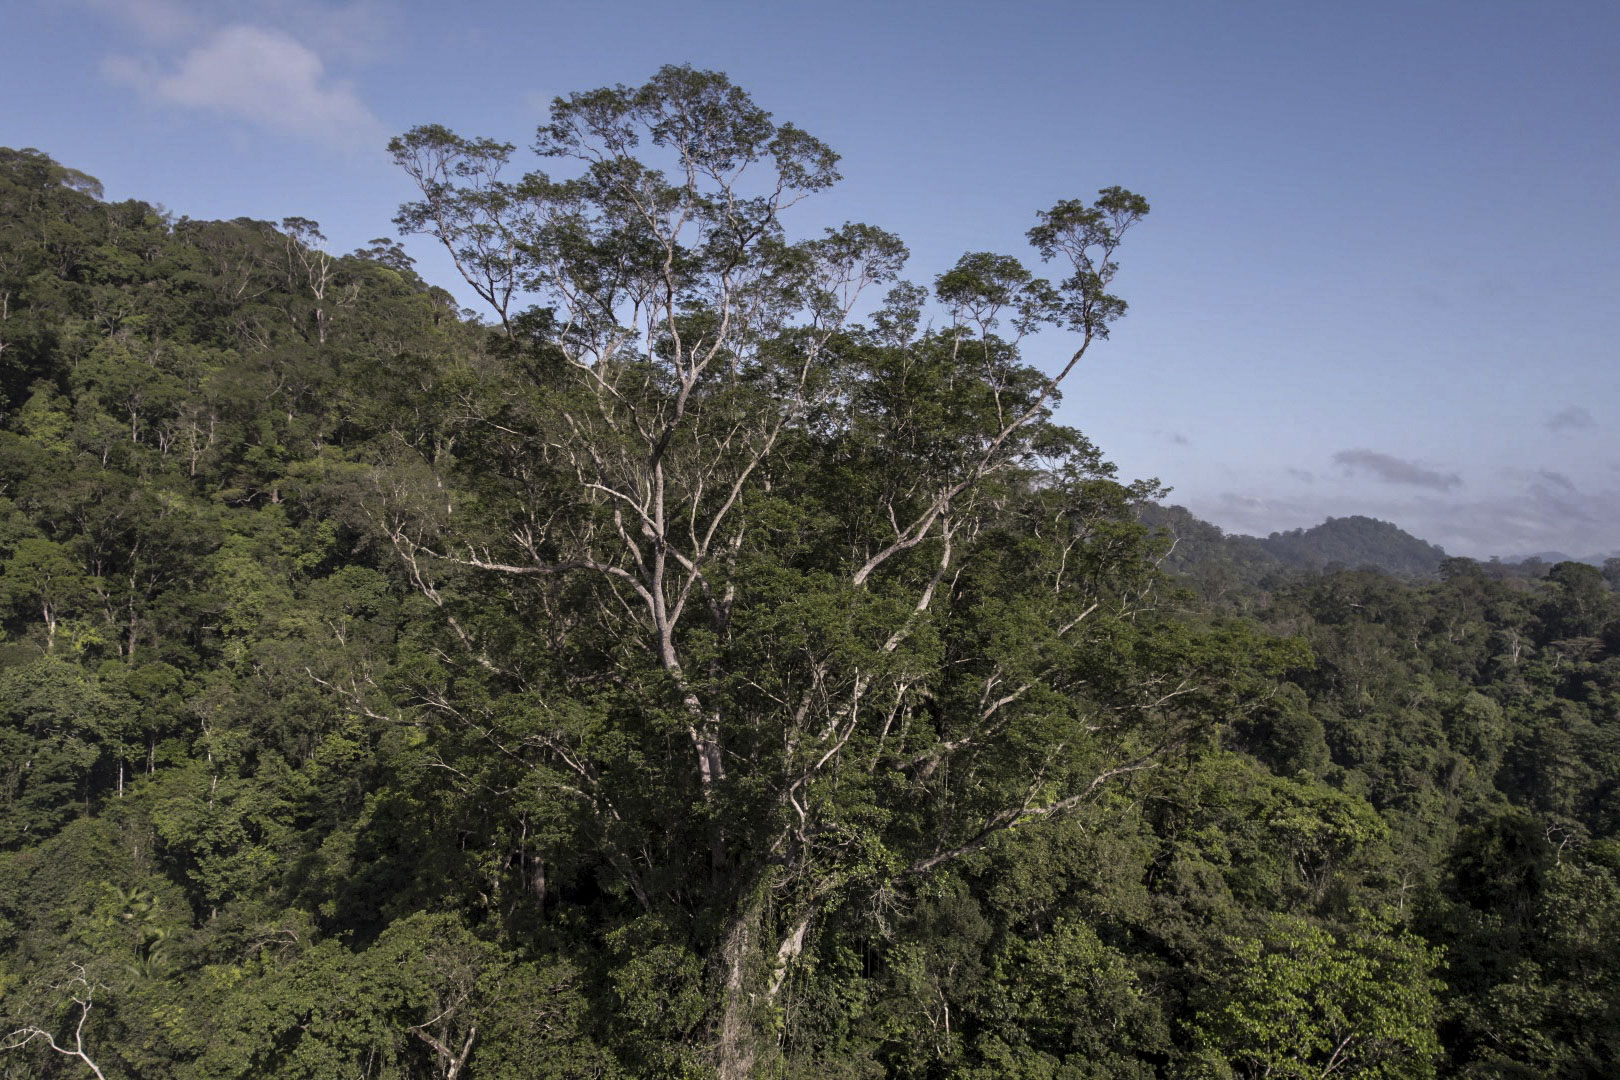 تین سال کی منصوبہ بندی، پانچ مہمات اور گھنے جنگل میں دو ہفتے کے سفر کے بعد، سائنسدان ایمیزون کے بارشی جنگل میں پائے جانے والے اب تک کے سب سے اونچے درخت تک پہنچ گئے ہیں، جو کہ 25 منزلہ عمارت کے سائز کا ایک بڑا نمونہ ہے۔